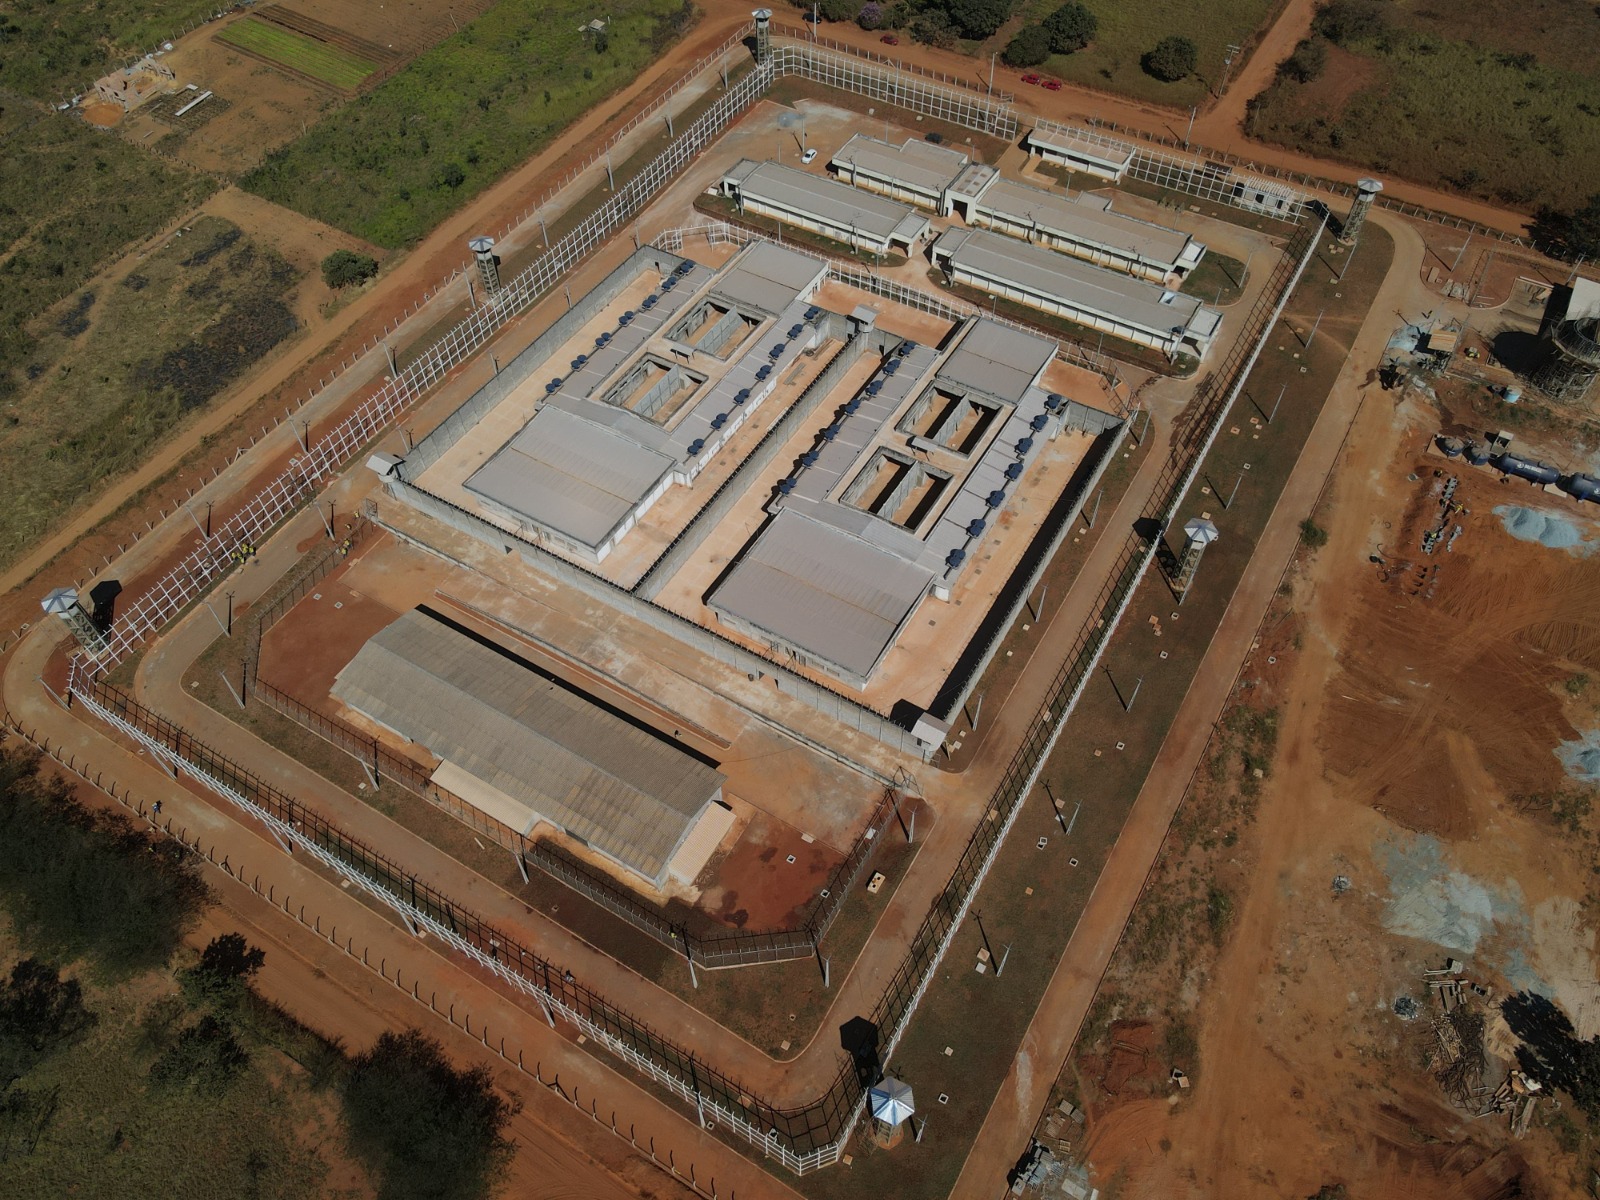 Unidade prisional de Novo Gama terá quatro alas com 75 vagas em cada, além de áreas administrativas, de saúde, de segurança, de manutenção e vivência coletiva